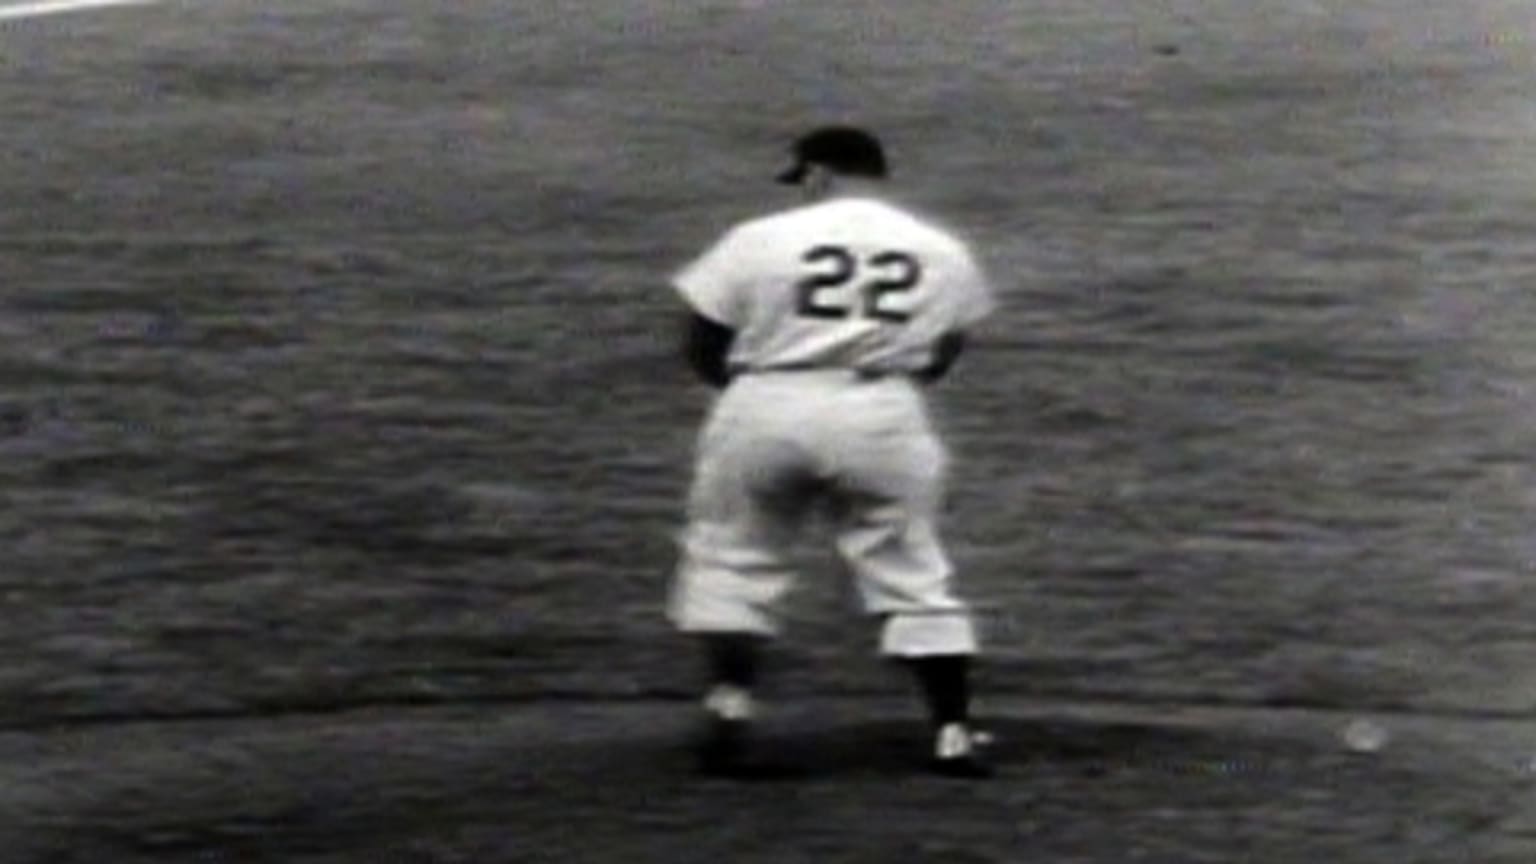 Yankees, Phillies met before in 1950 World Series